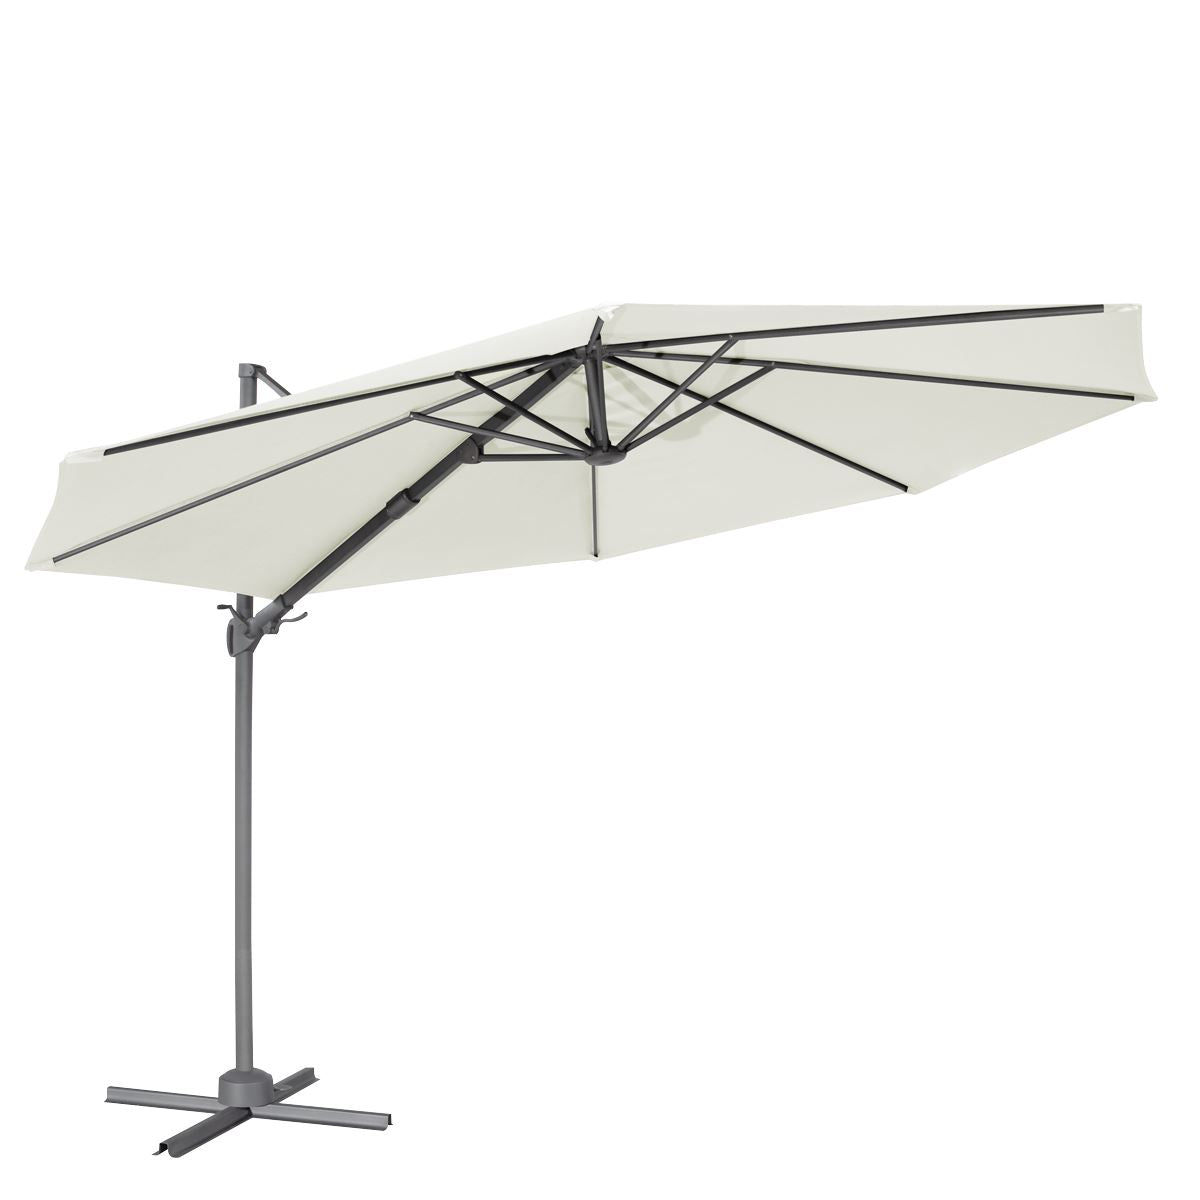 Dellonda Ø3m Garden/Patio Cantilever Parasol/Umbrella with Crank Handle, 360° Rotation, Tilt and Cover, Cream